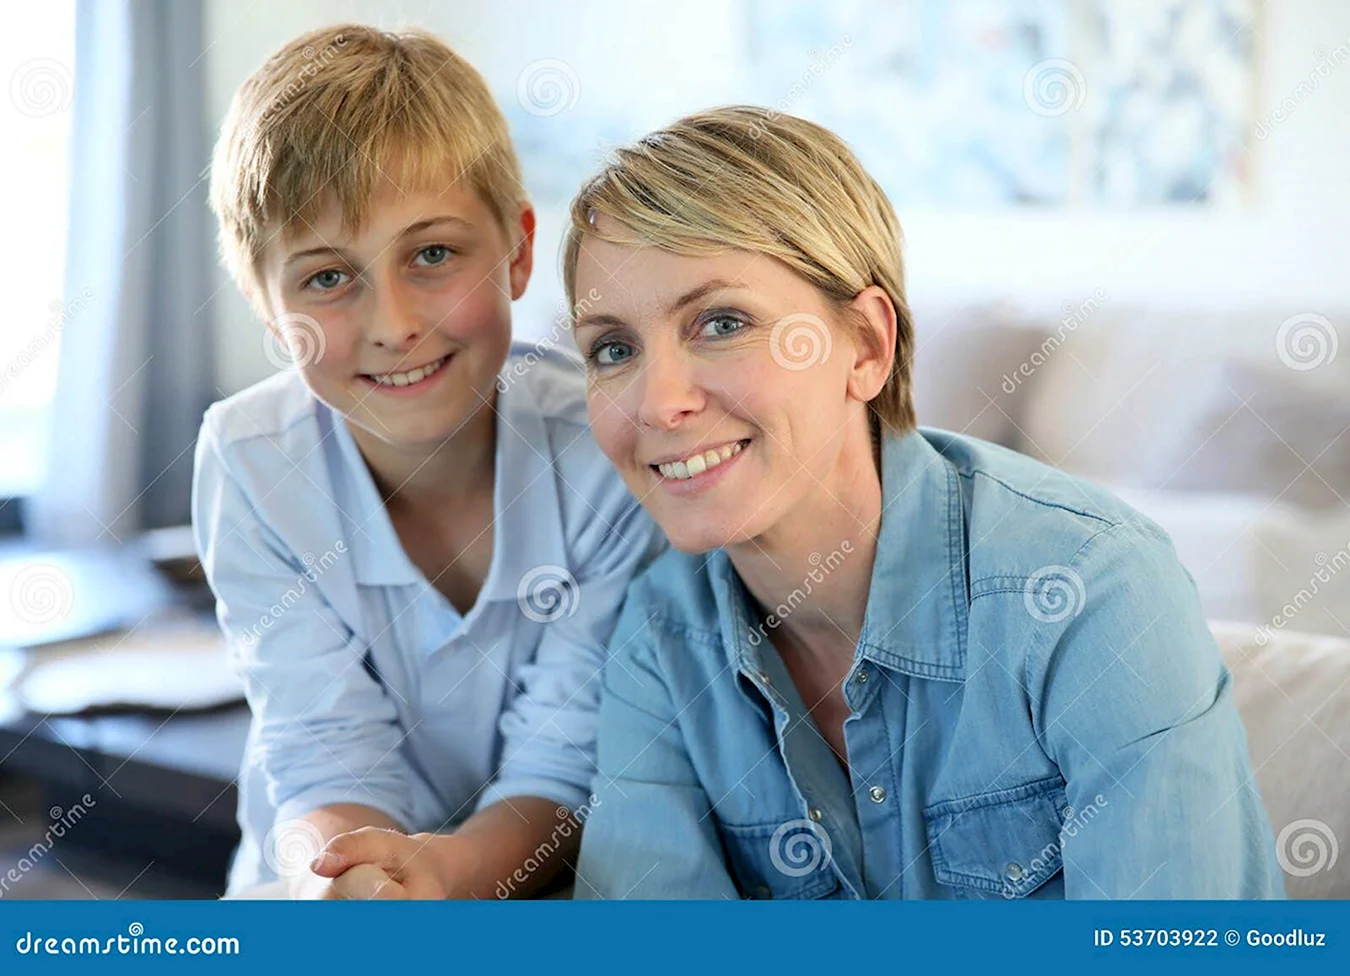 Фотосессия мама и сын школьник